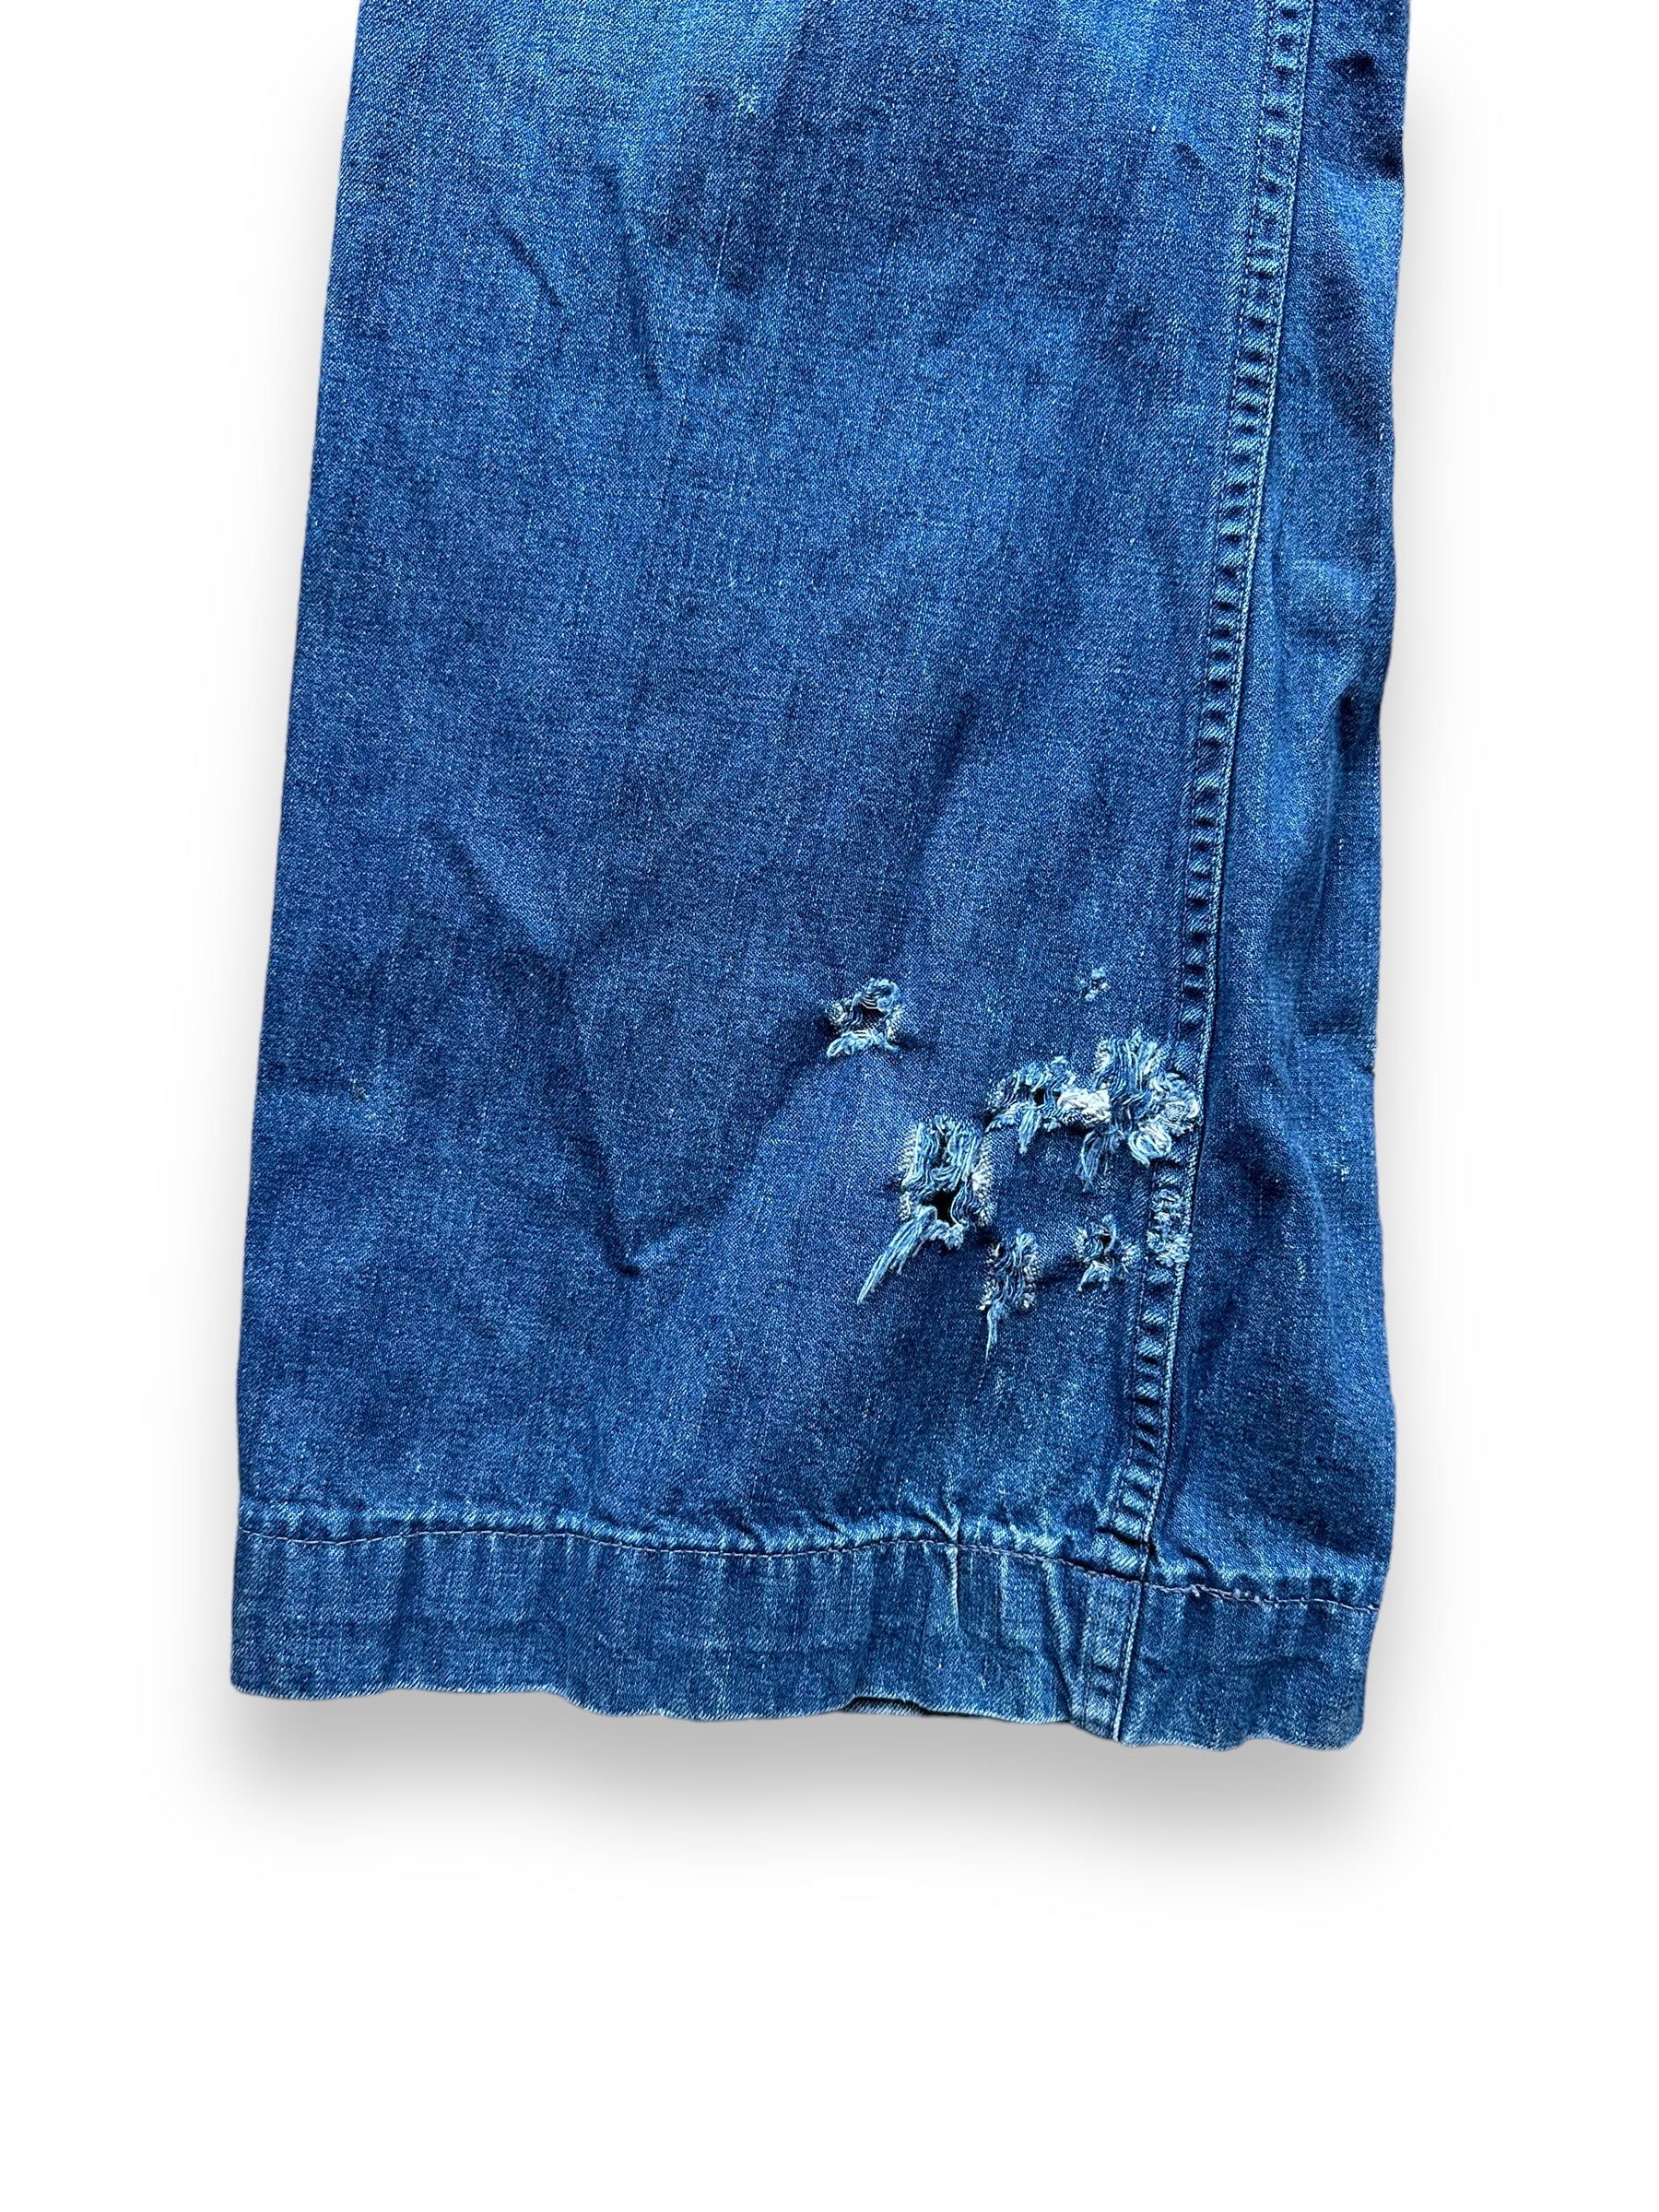 Vintage Chain Pants | Eb Denim Vintage Blue / S